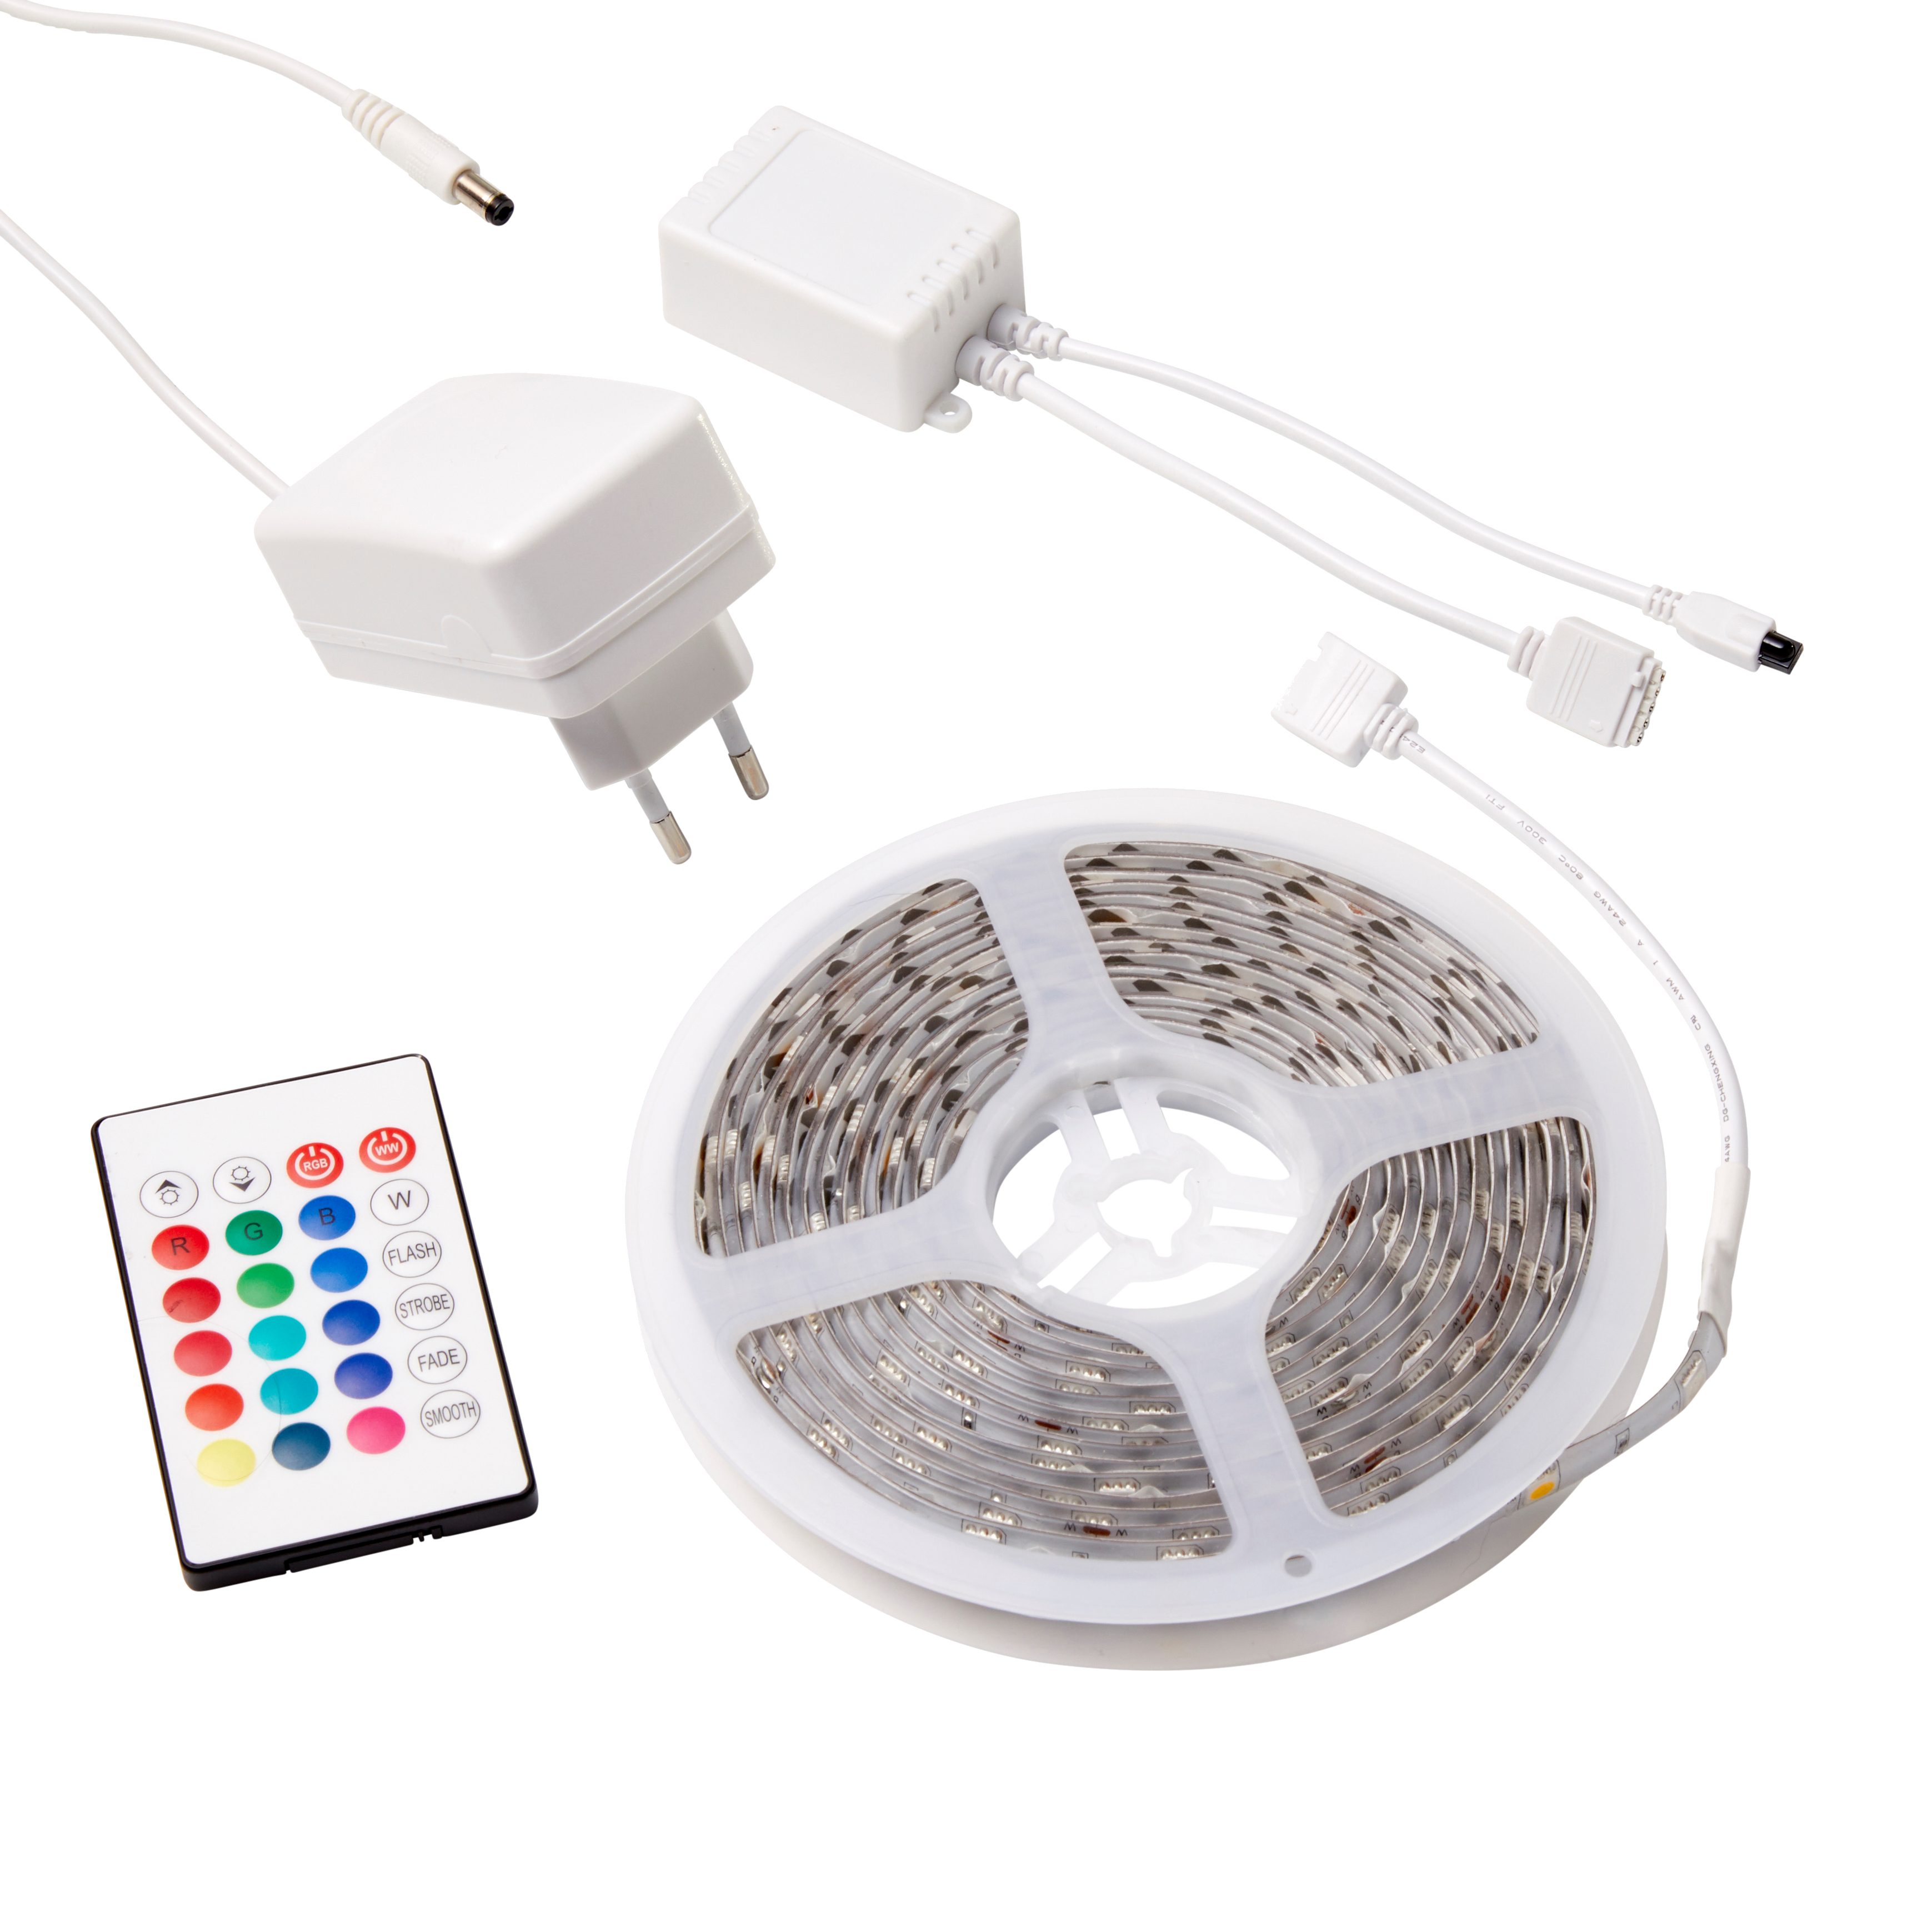 Northpoint LED-Streifen »5m LED Lichtband mit 180 LEDs inkl.  Fernbedienung«, 15 Farben (Bunt und warmwei), RGBW, Fernbedienung,  vielseitige Einsatzmöglichkeiten, selbstklebend, inkl. Befestigungsmaterial  online kaufen | OTTO